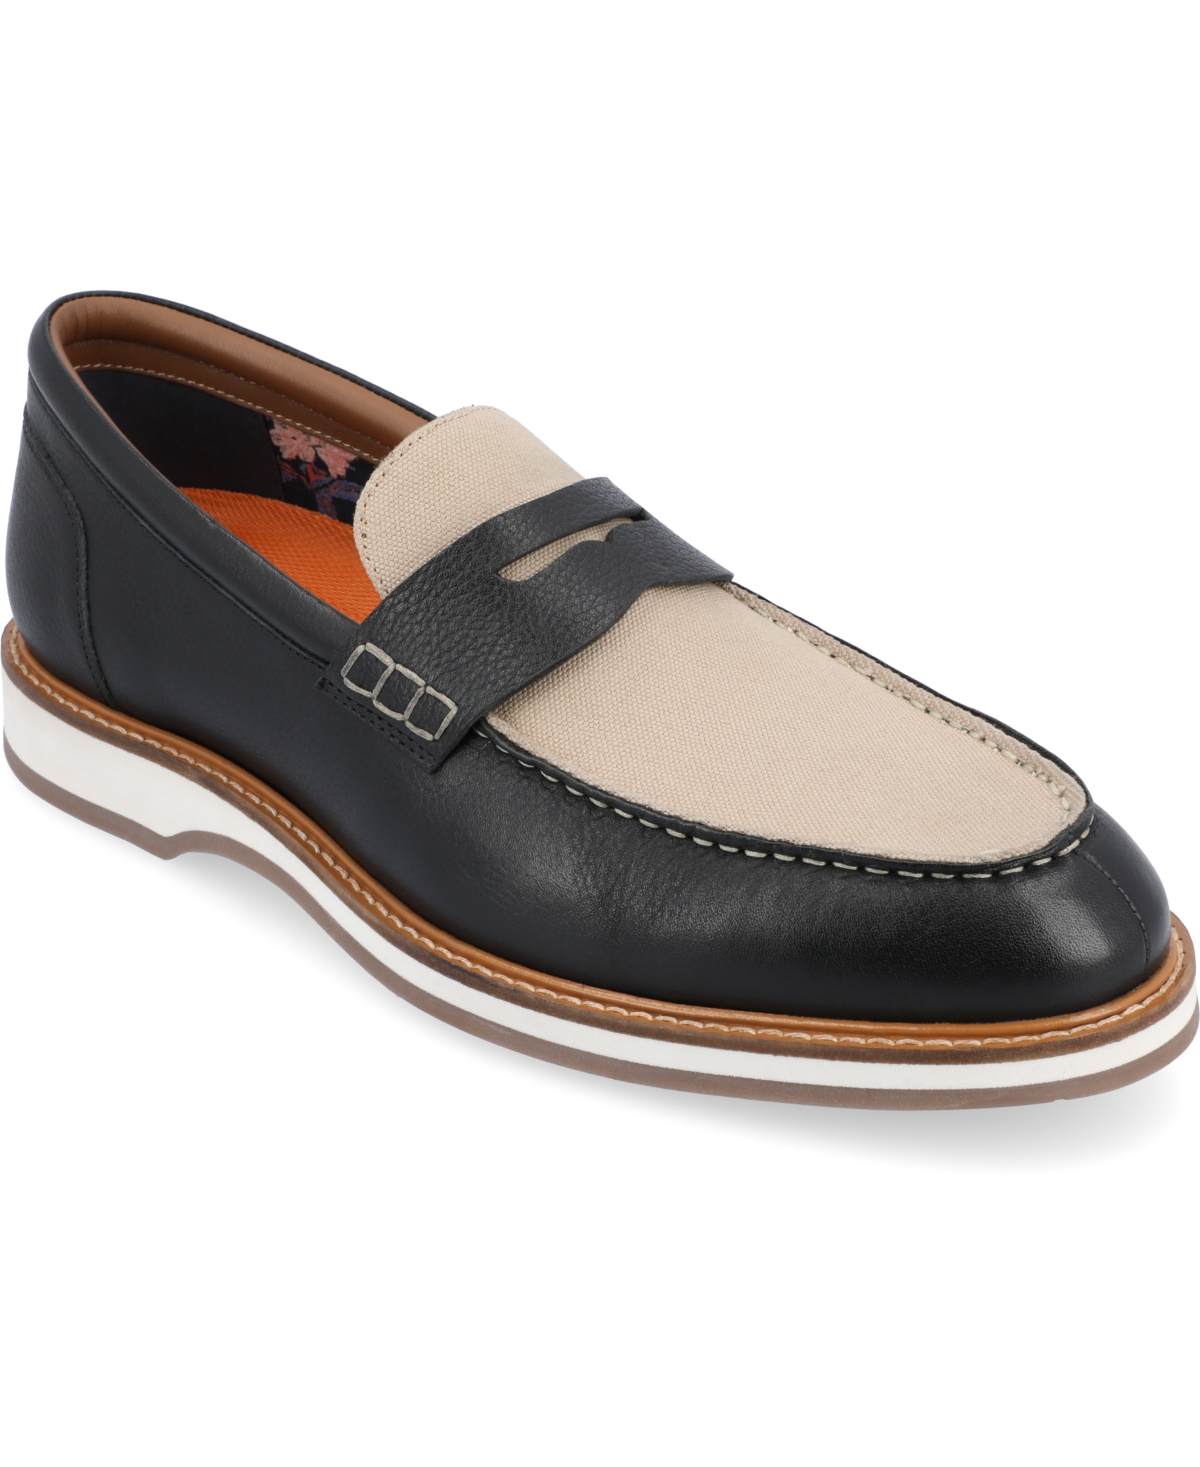 Men's Kaufman Moc Toe Penny Loafers Casual Shoes - Cognac